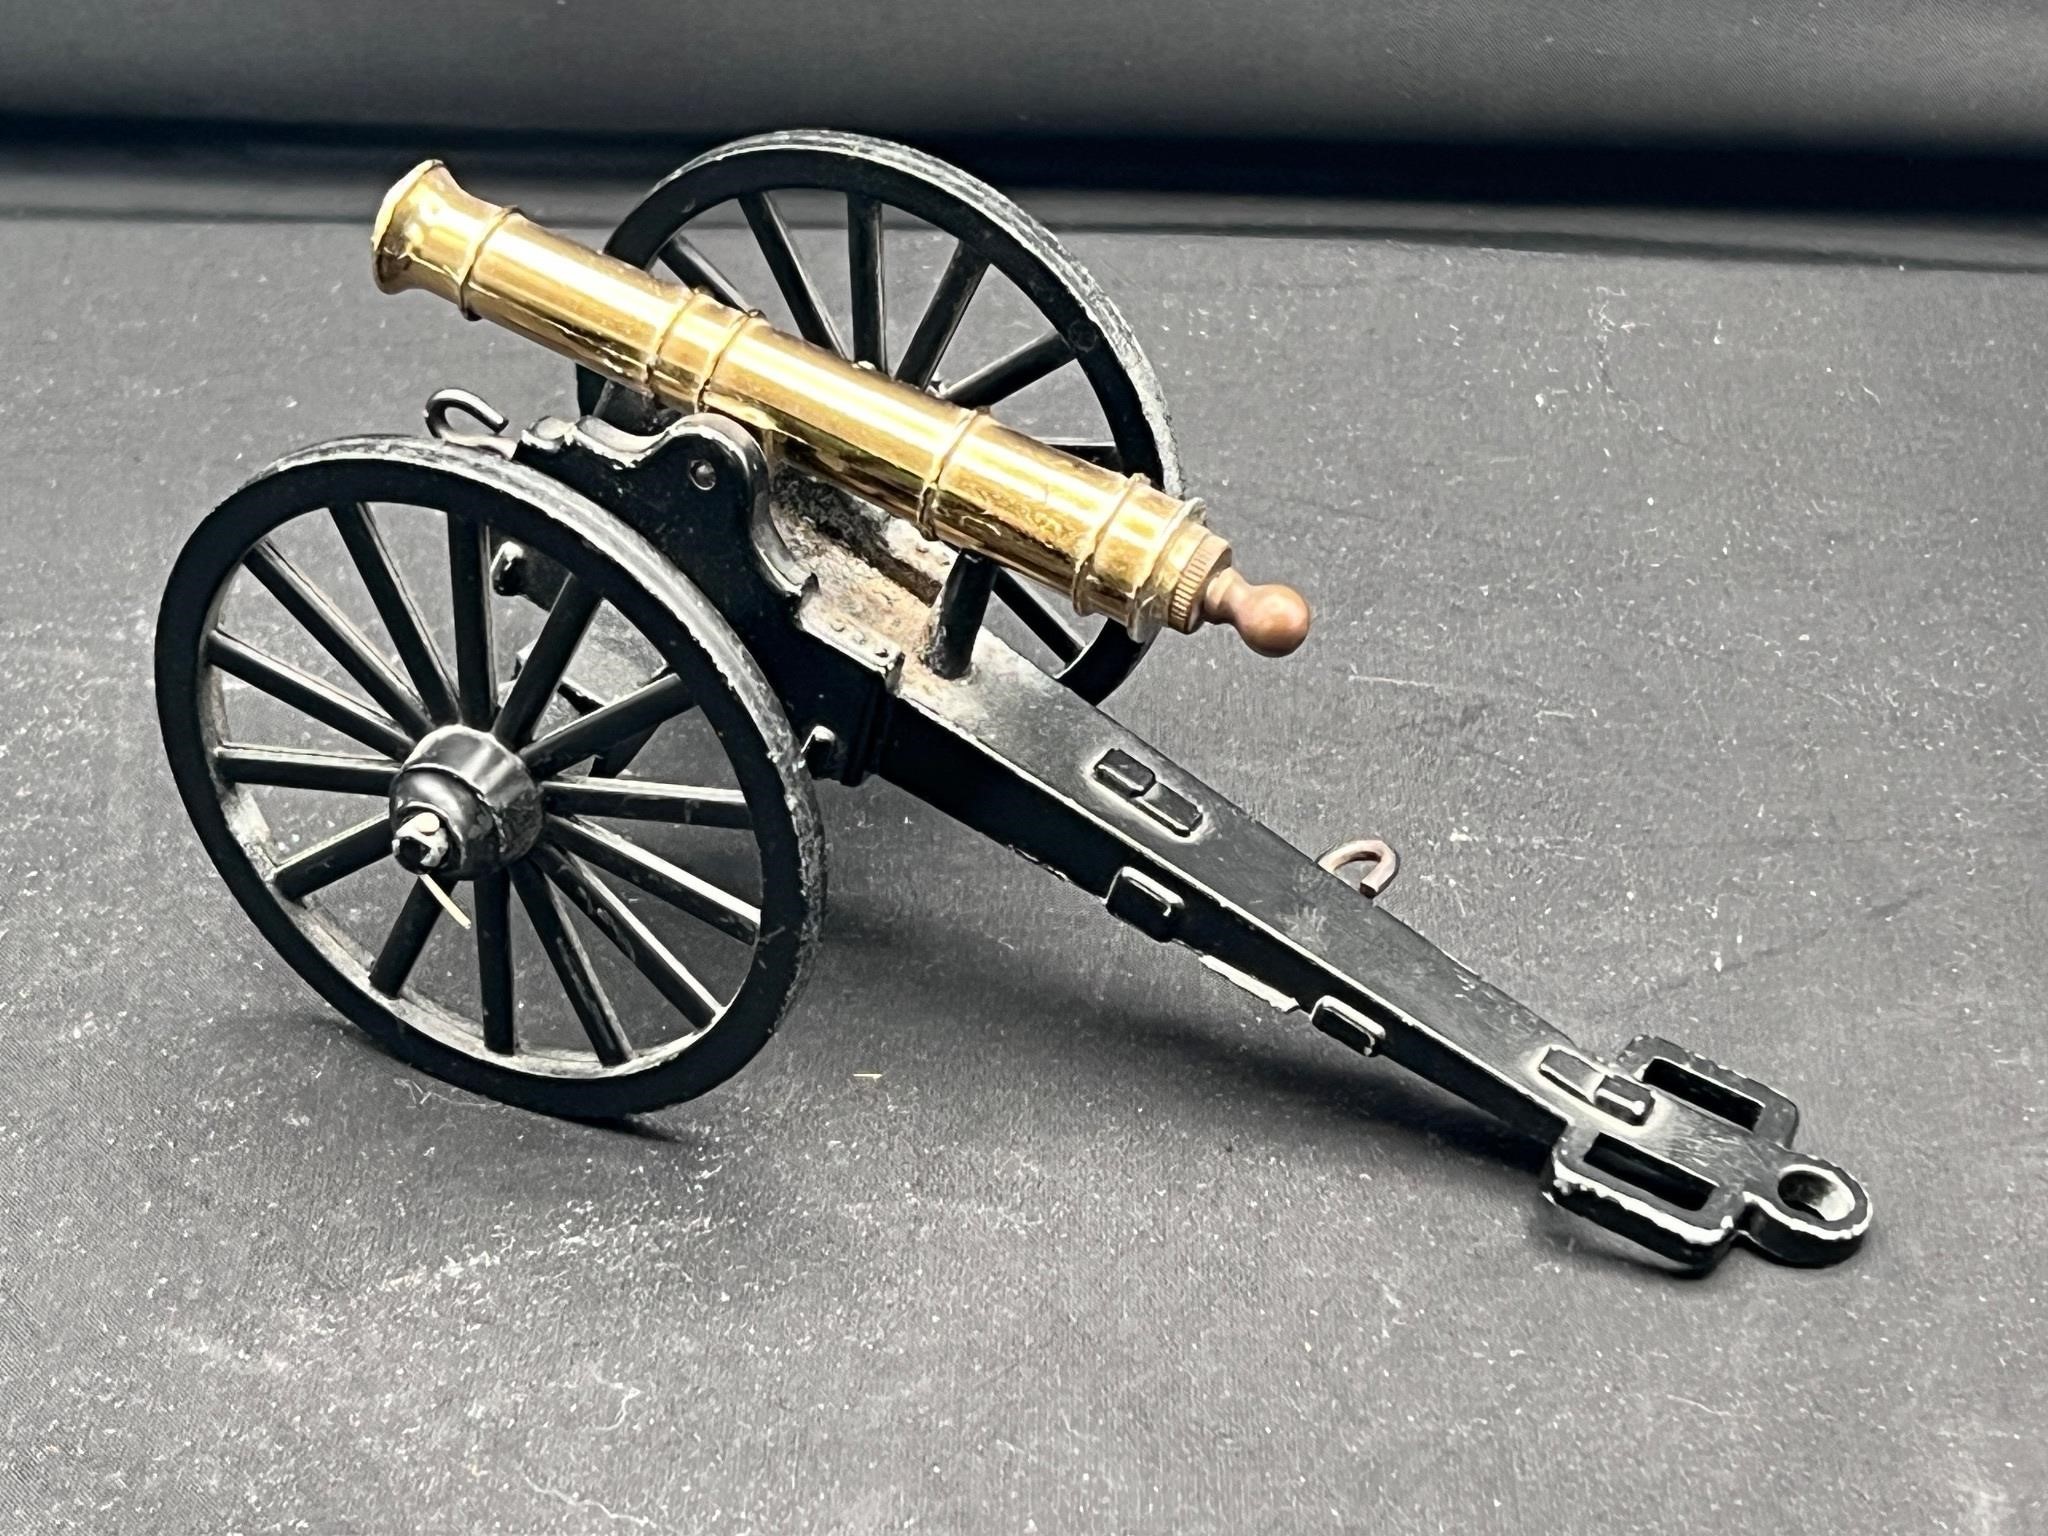 Civil war model cannon